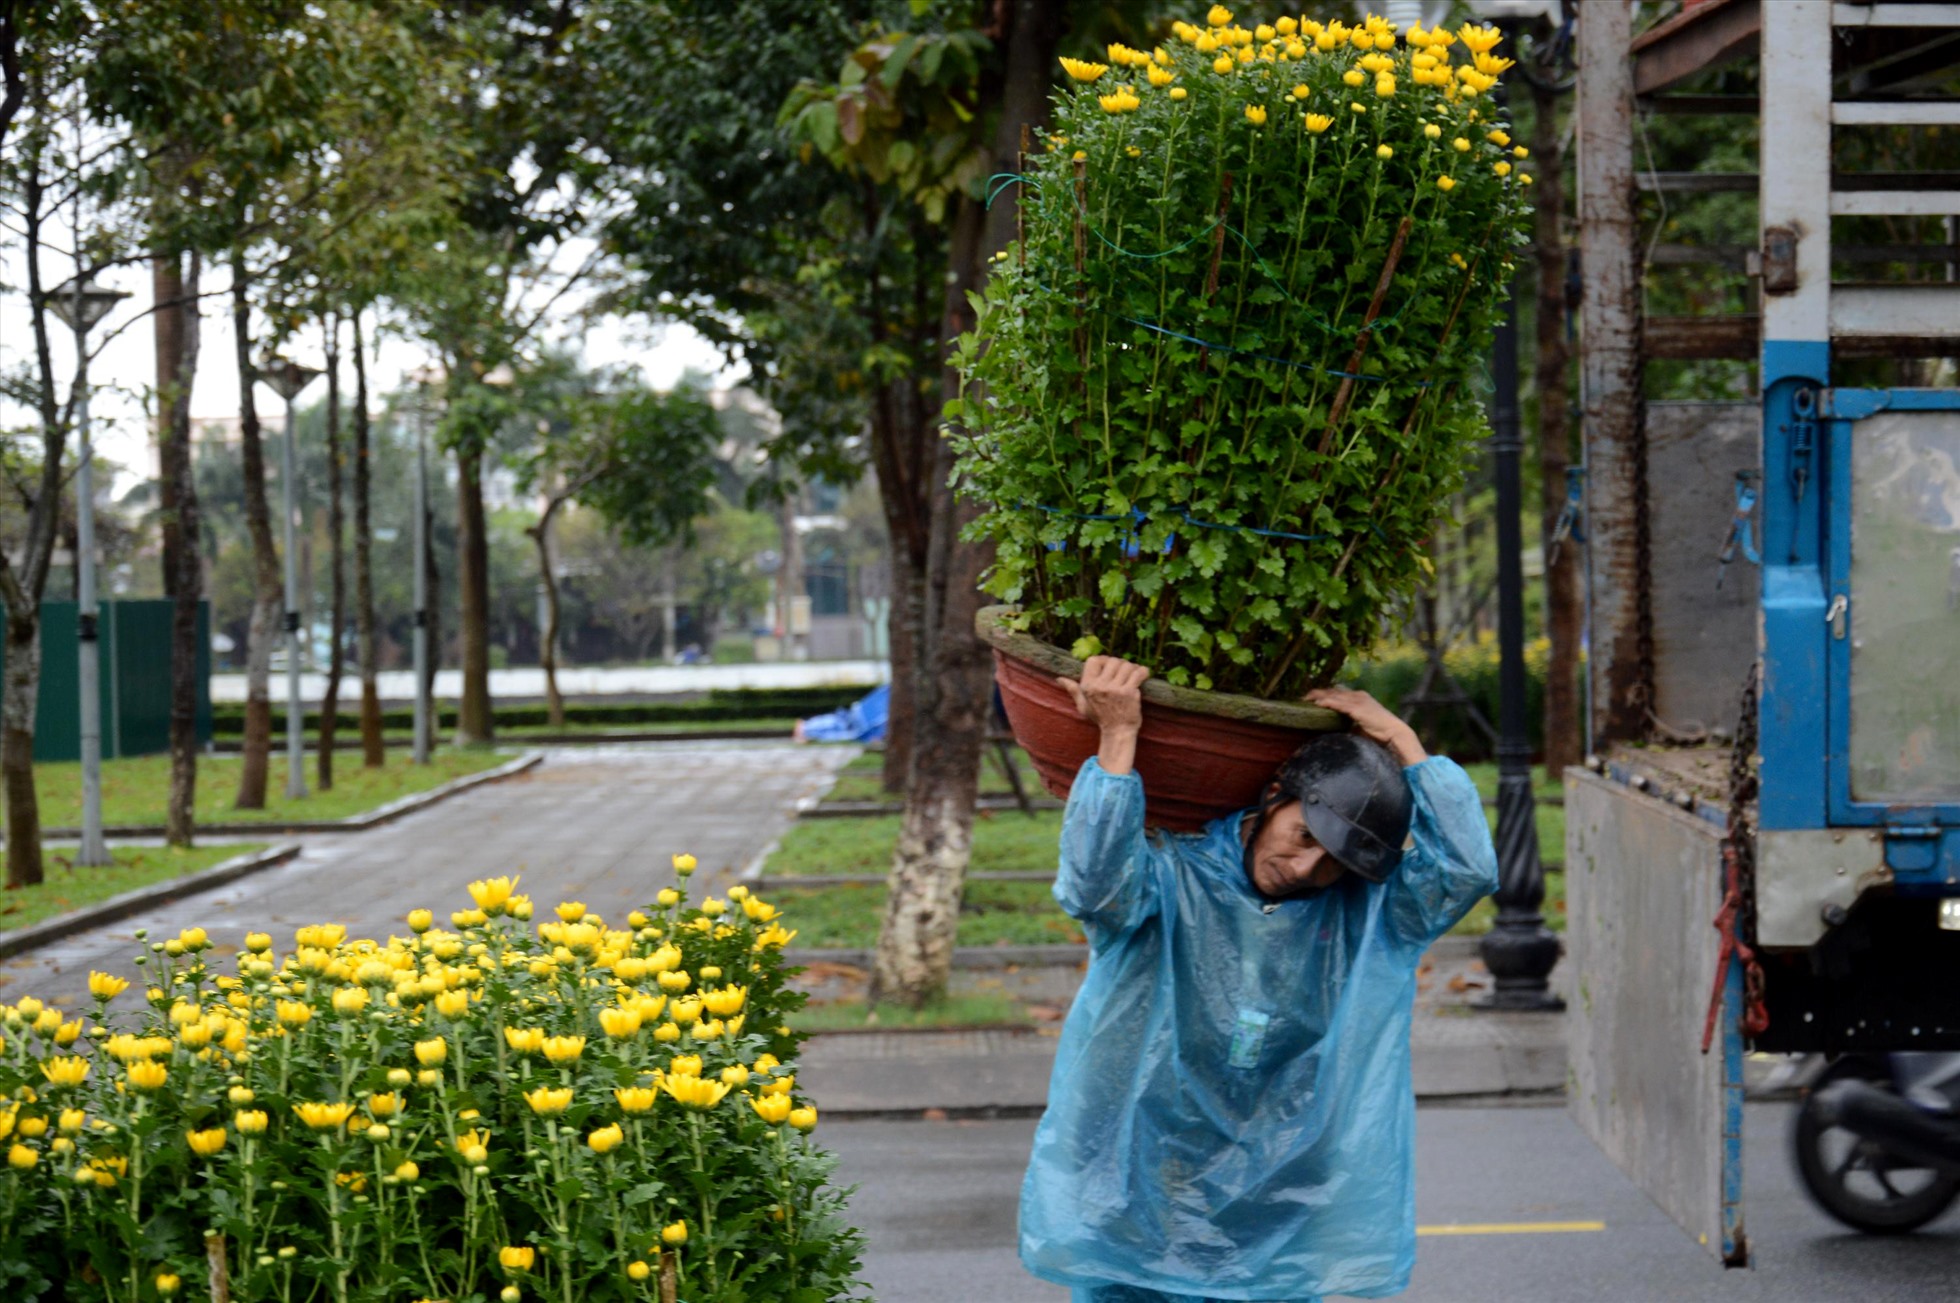 Mưa lạnh kéo dài, nhiều người mưu sinh bằng việc khuân vác hoa Tết ở quảng trường Phạm Văn Đồng cũng khá vất vả. Ảnh: Ngọc Viên